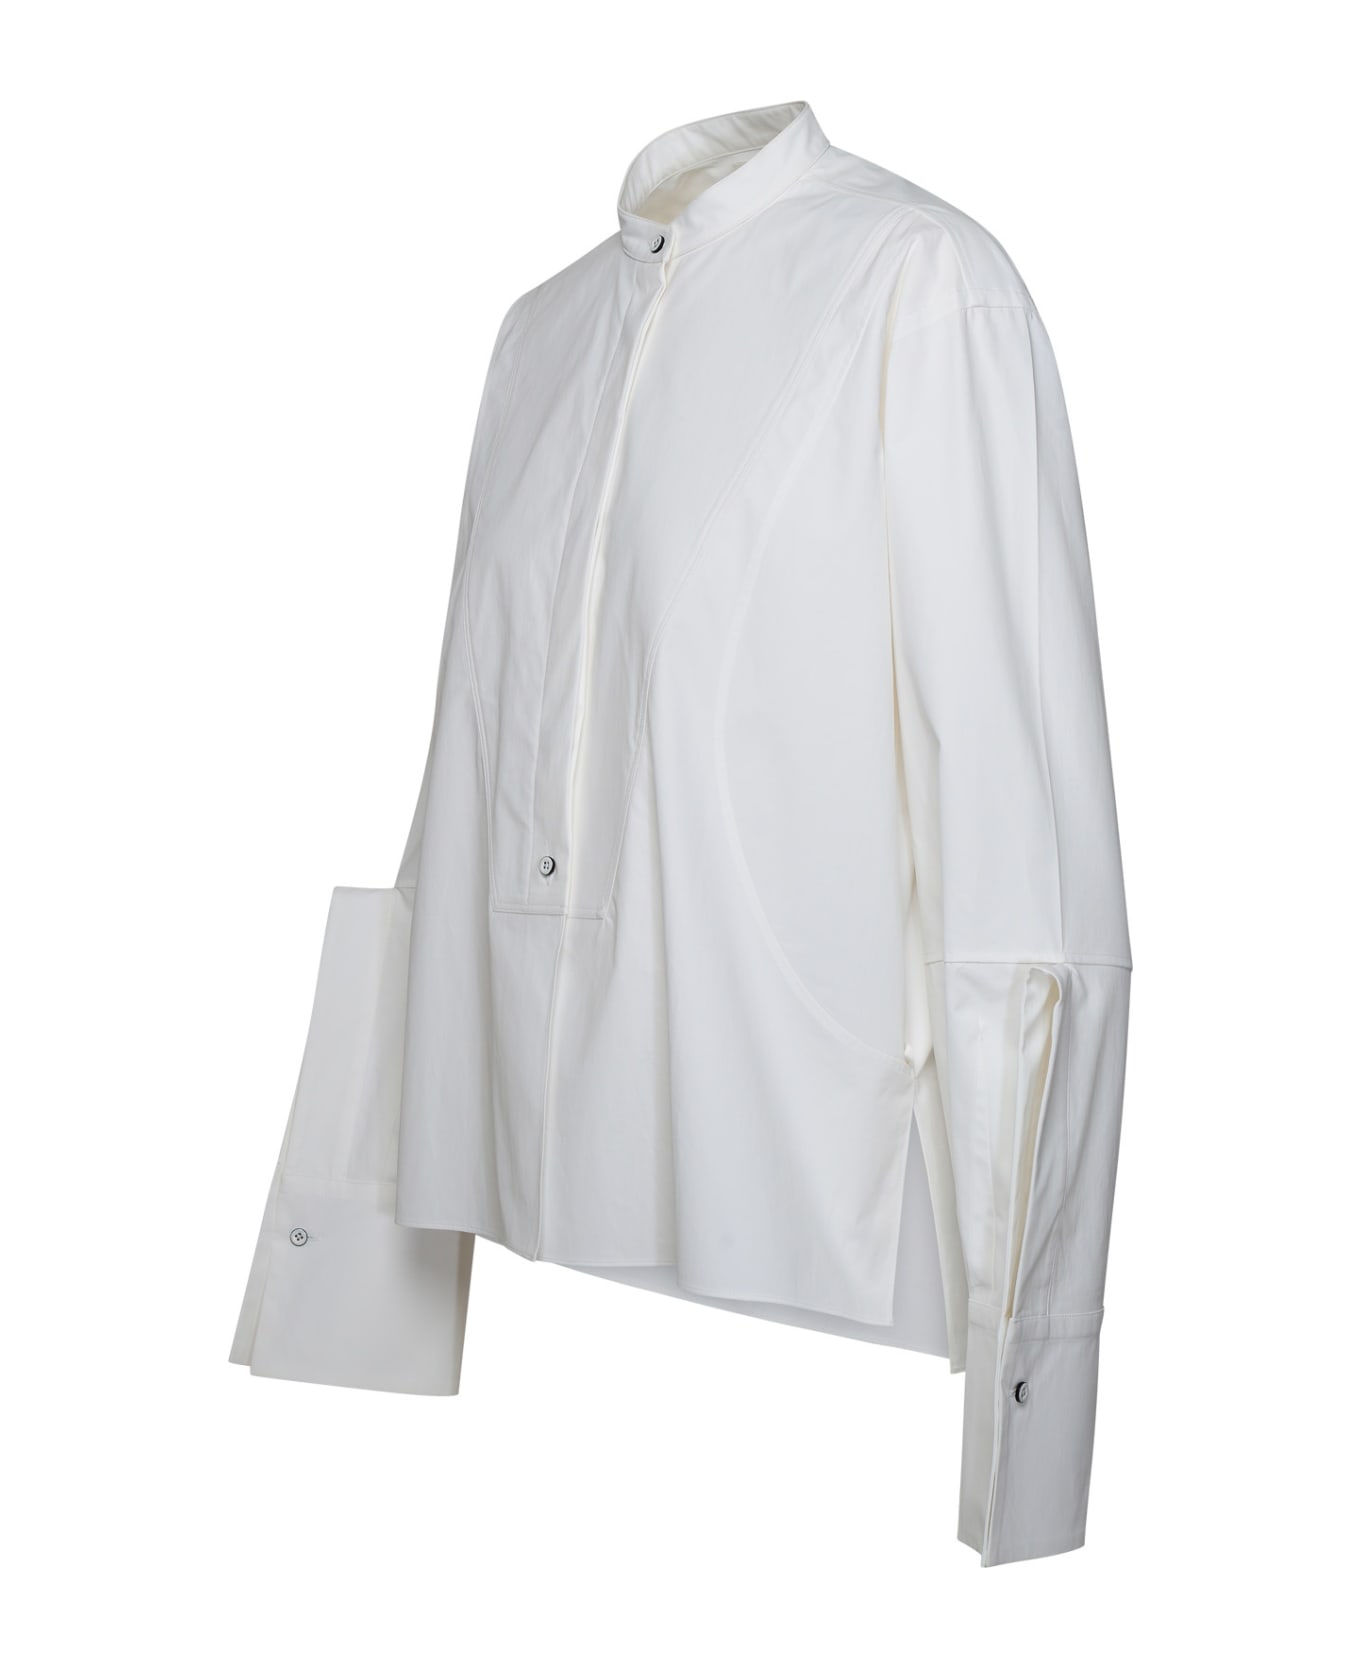 Jil Sander White Cotton Shirt - White